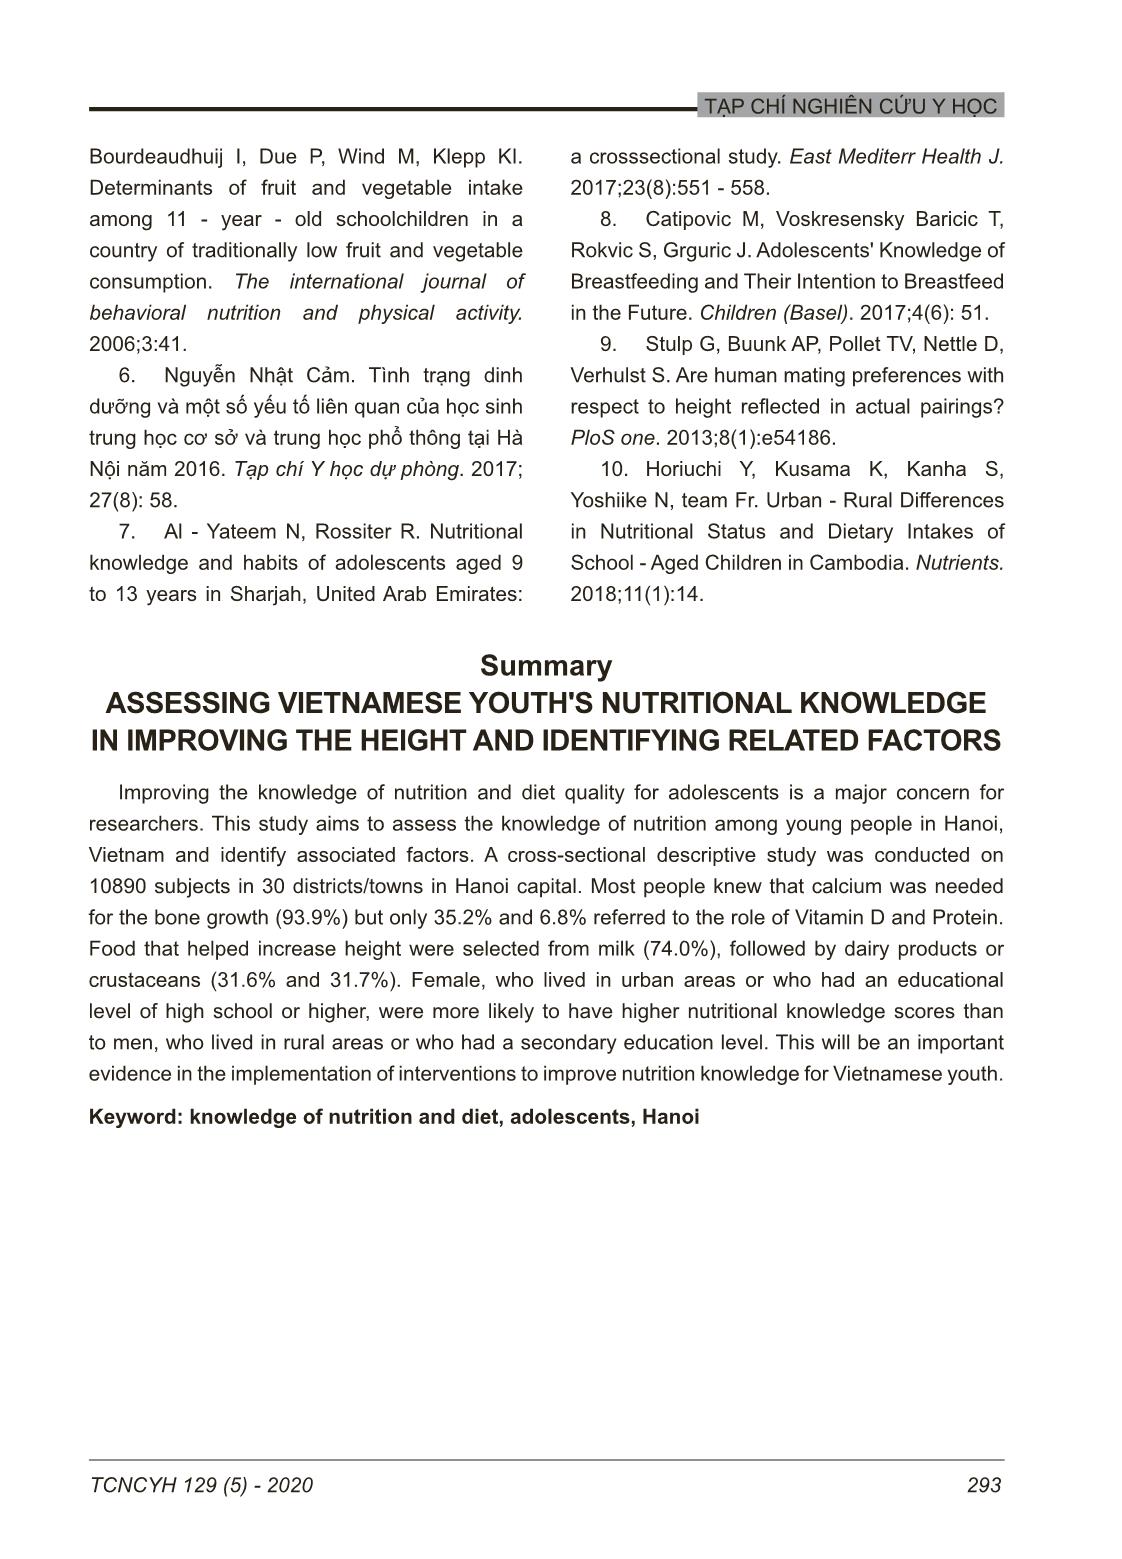 Kiến thức về dinh dưỡng cải thiện chiều cao của thanh niên tại Hà Nội, Việt Nam và một số yêu tố liên quan trang 8